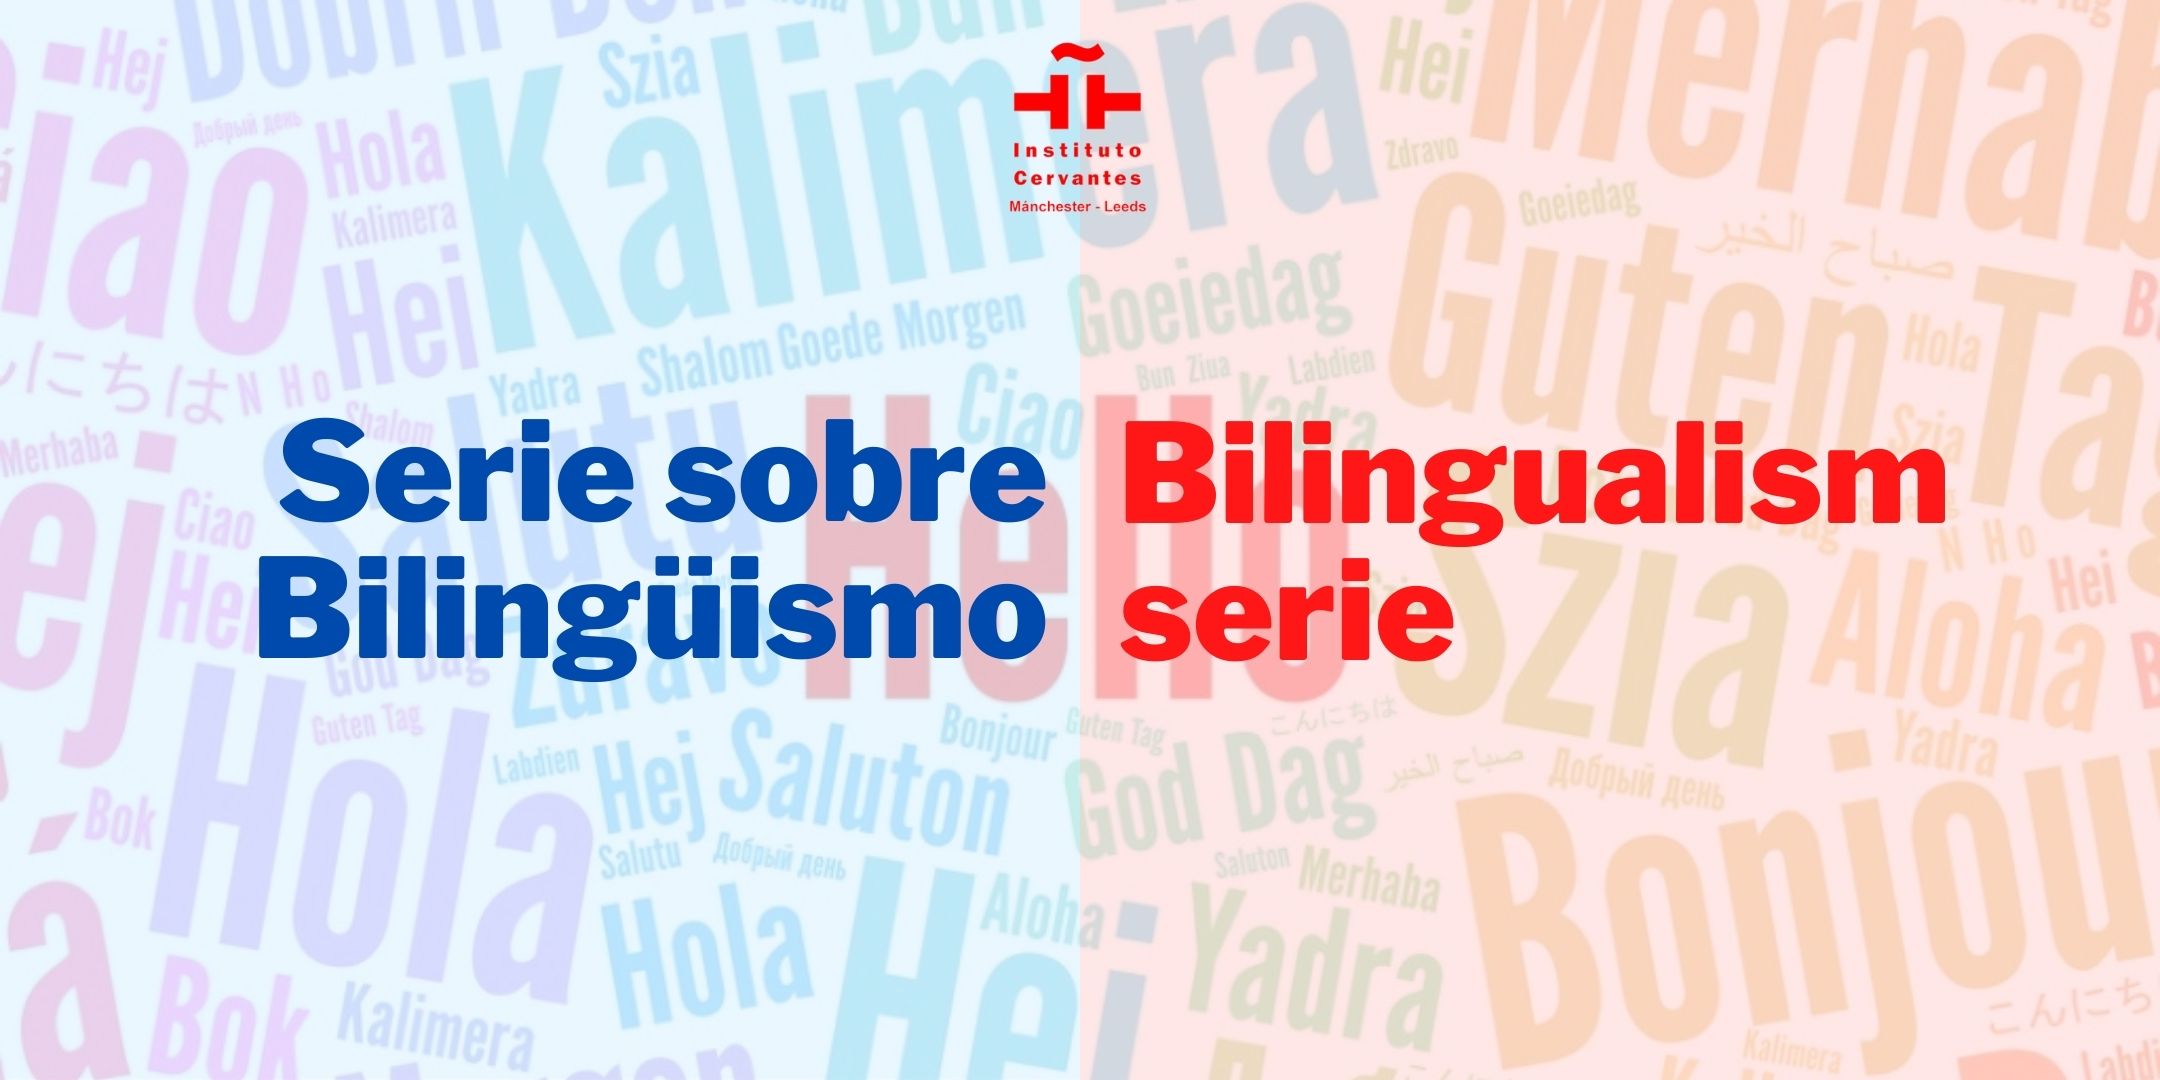 Bilingualism series. Fourth edition